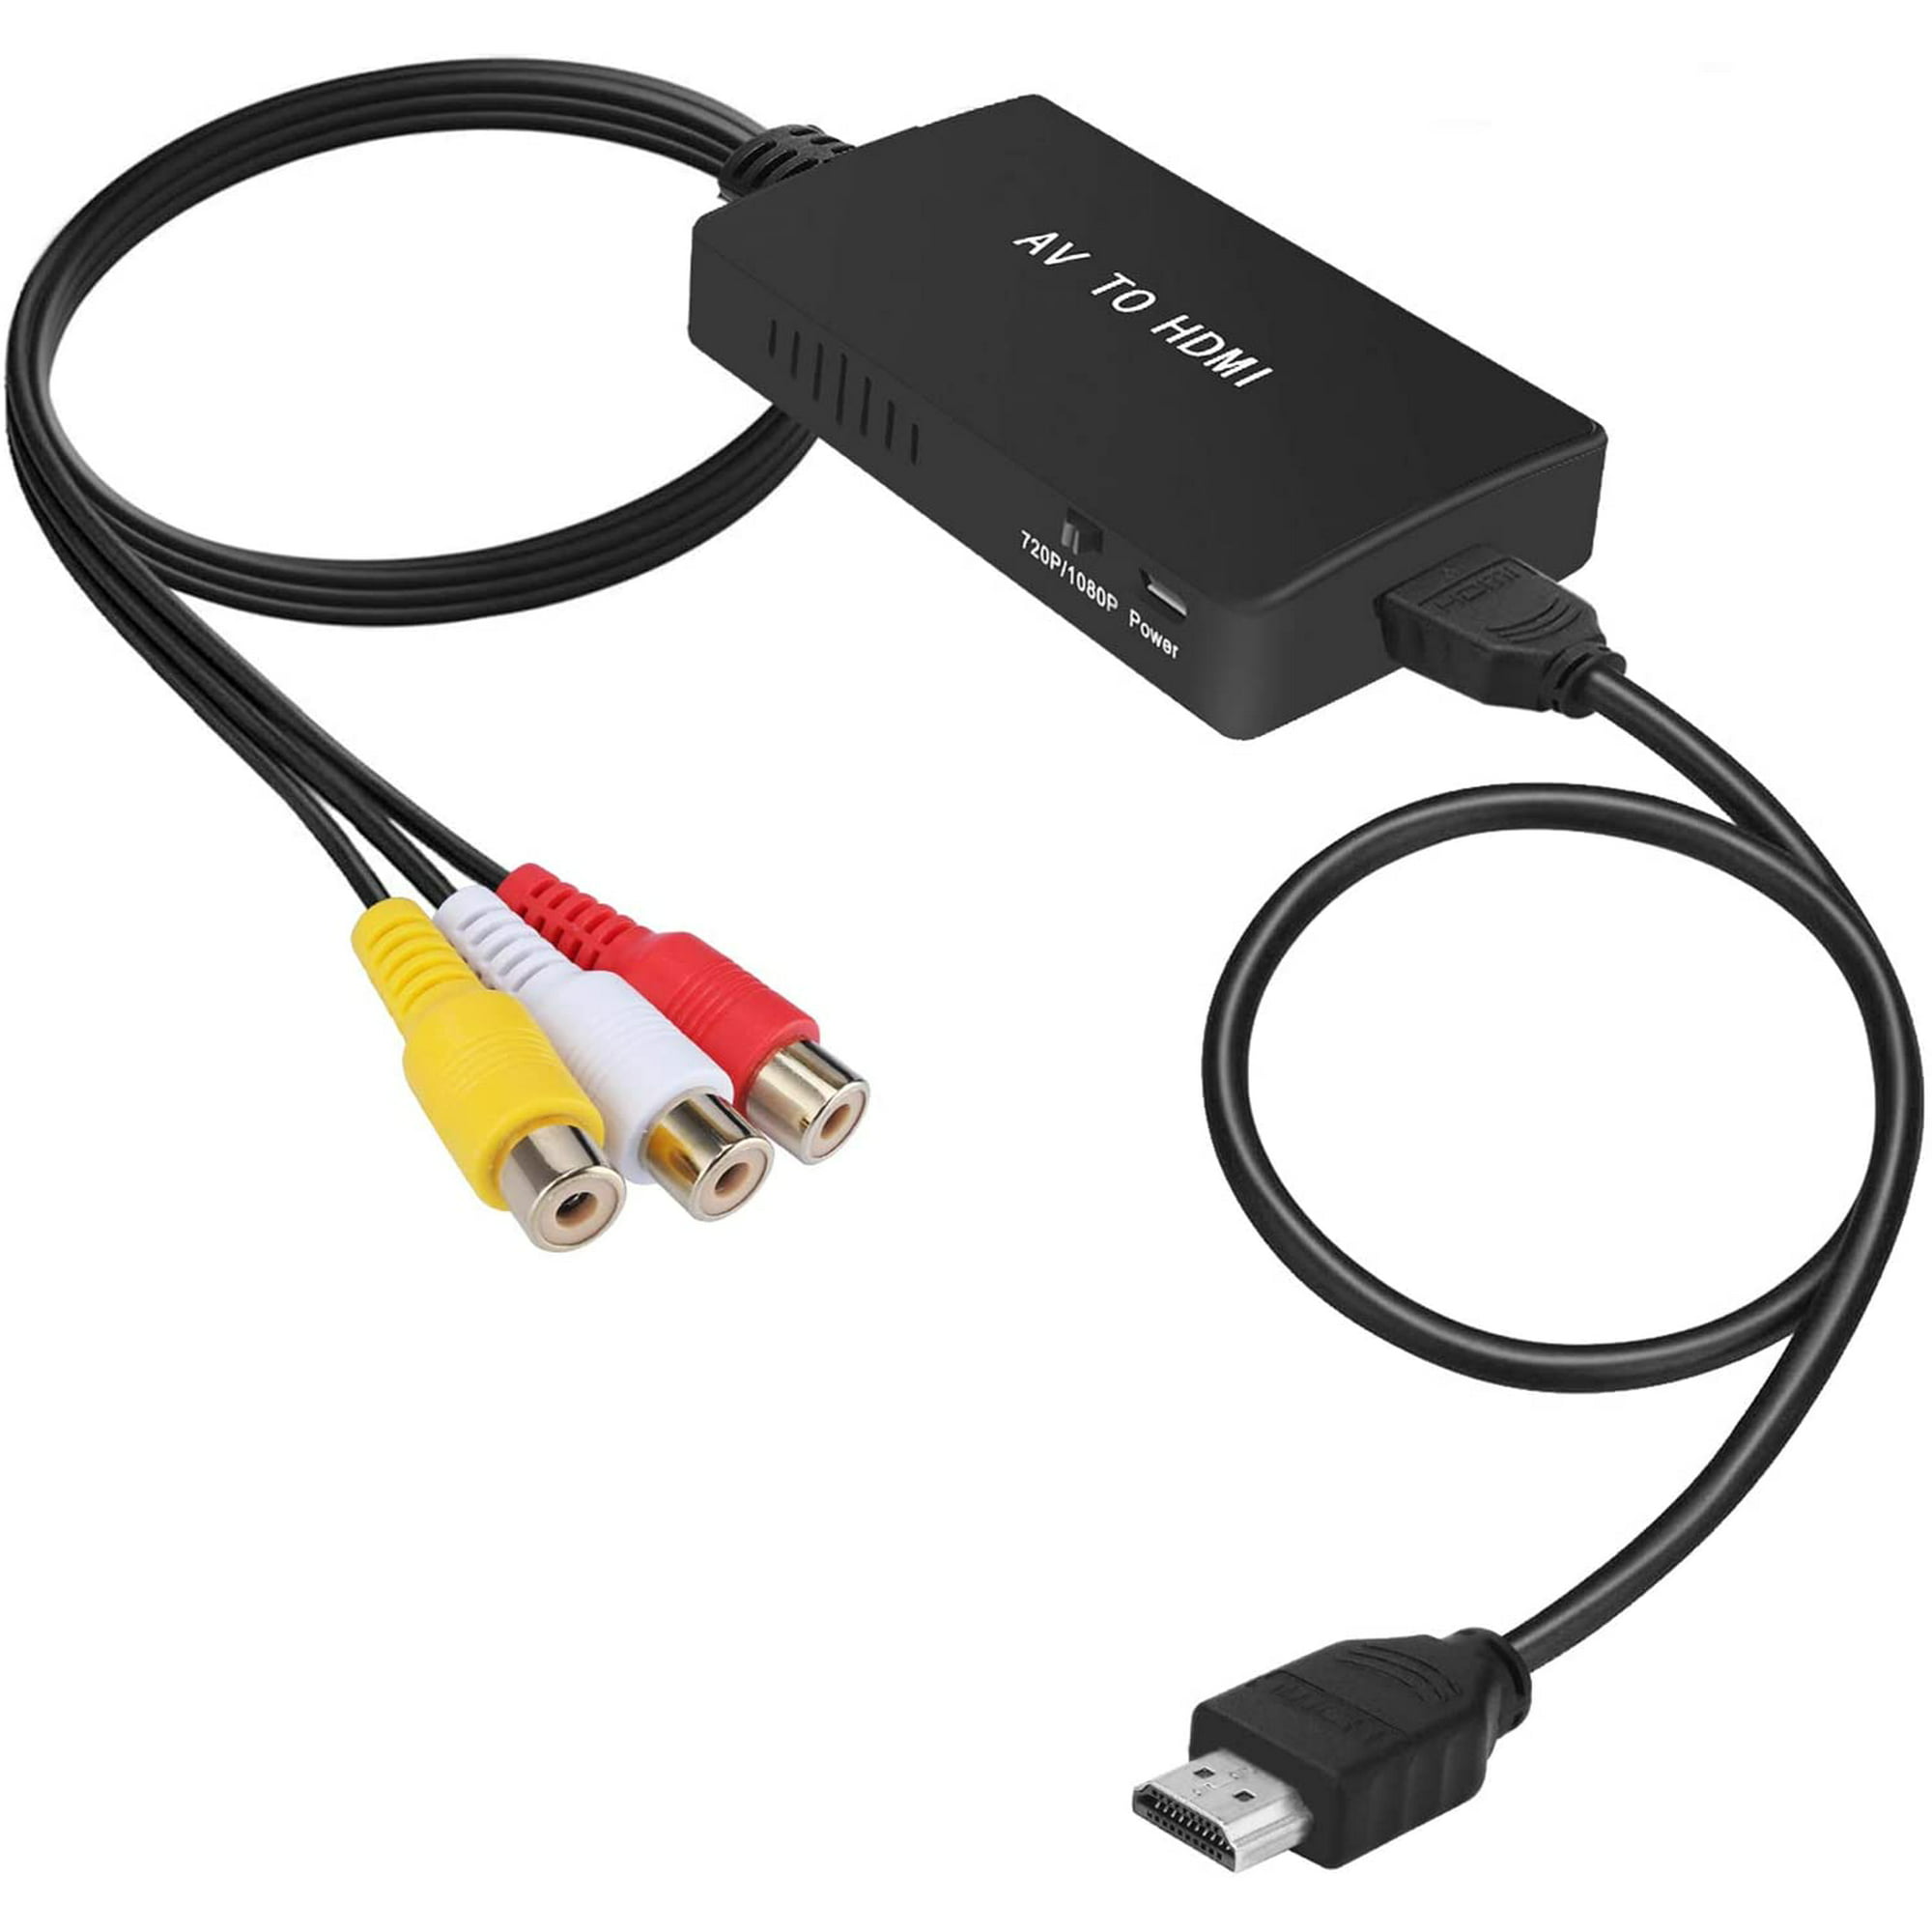 Convertidor HDMI a RCA, cable HDMI a RCA, cable adaptador 1080P HDMI a AV  compatible con NTSC para TV Stick, Chromecast, Apple TV, PC, computadora  portátil, Xbox, HDTV, DVD, etc. Vhermosa 2036001